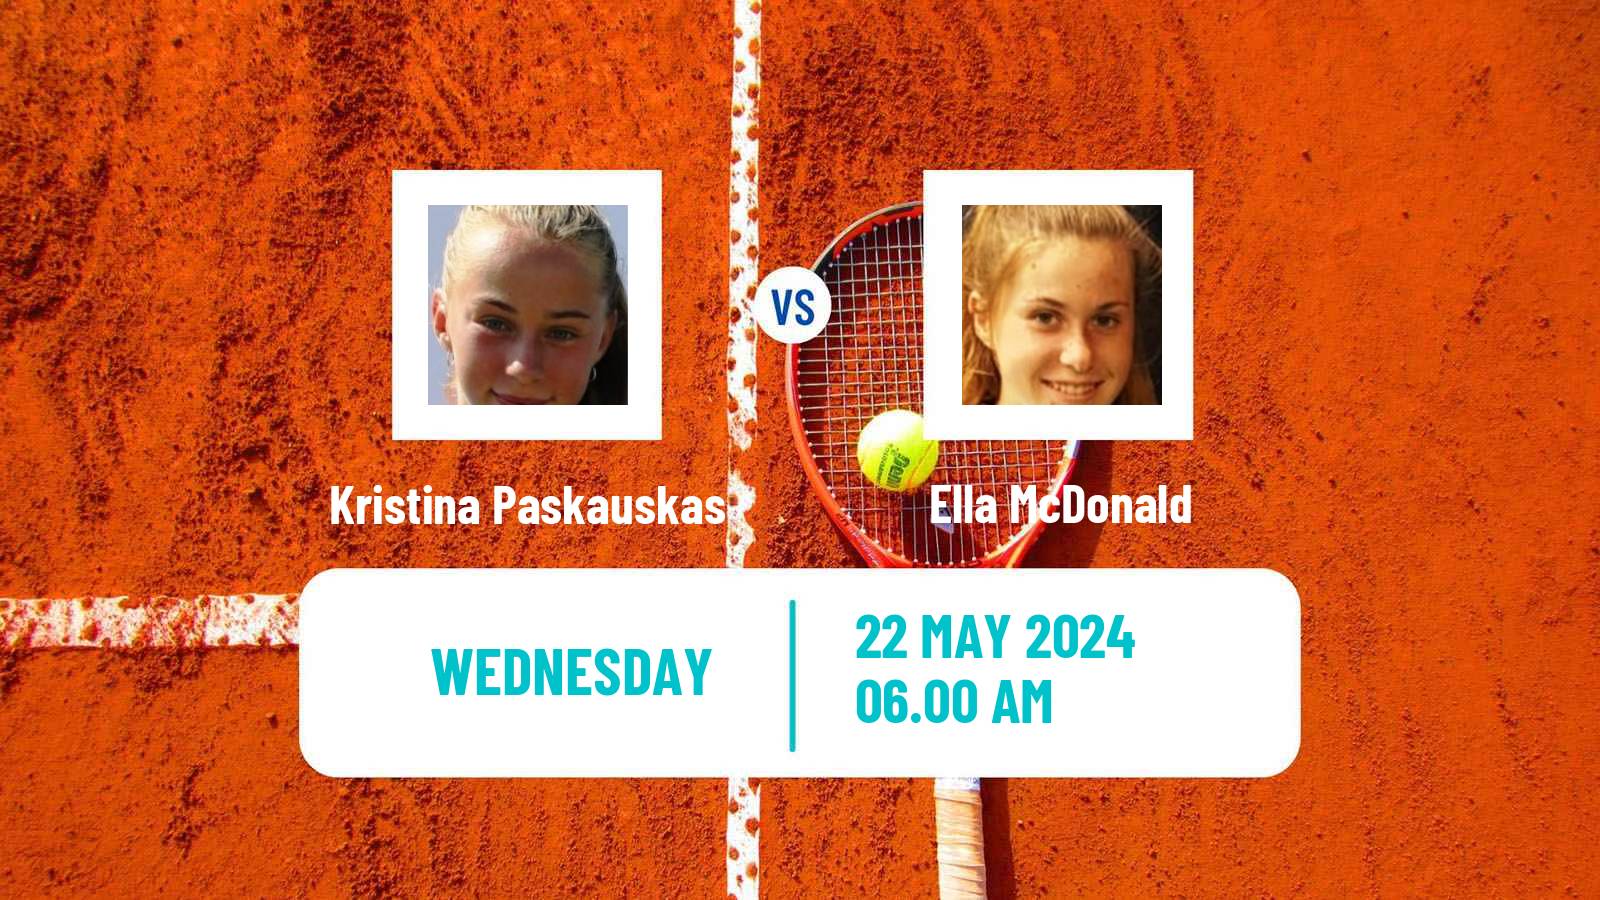 Tennis ITF W15 Monastir 19 Women Kristina Paskauskas - Ella McDonald